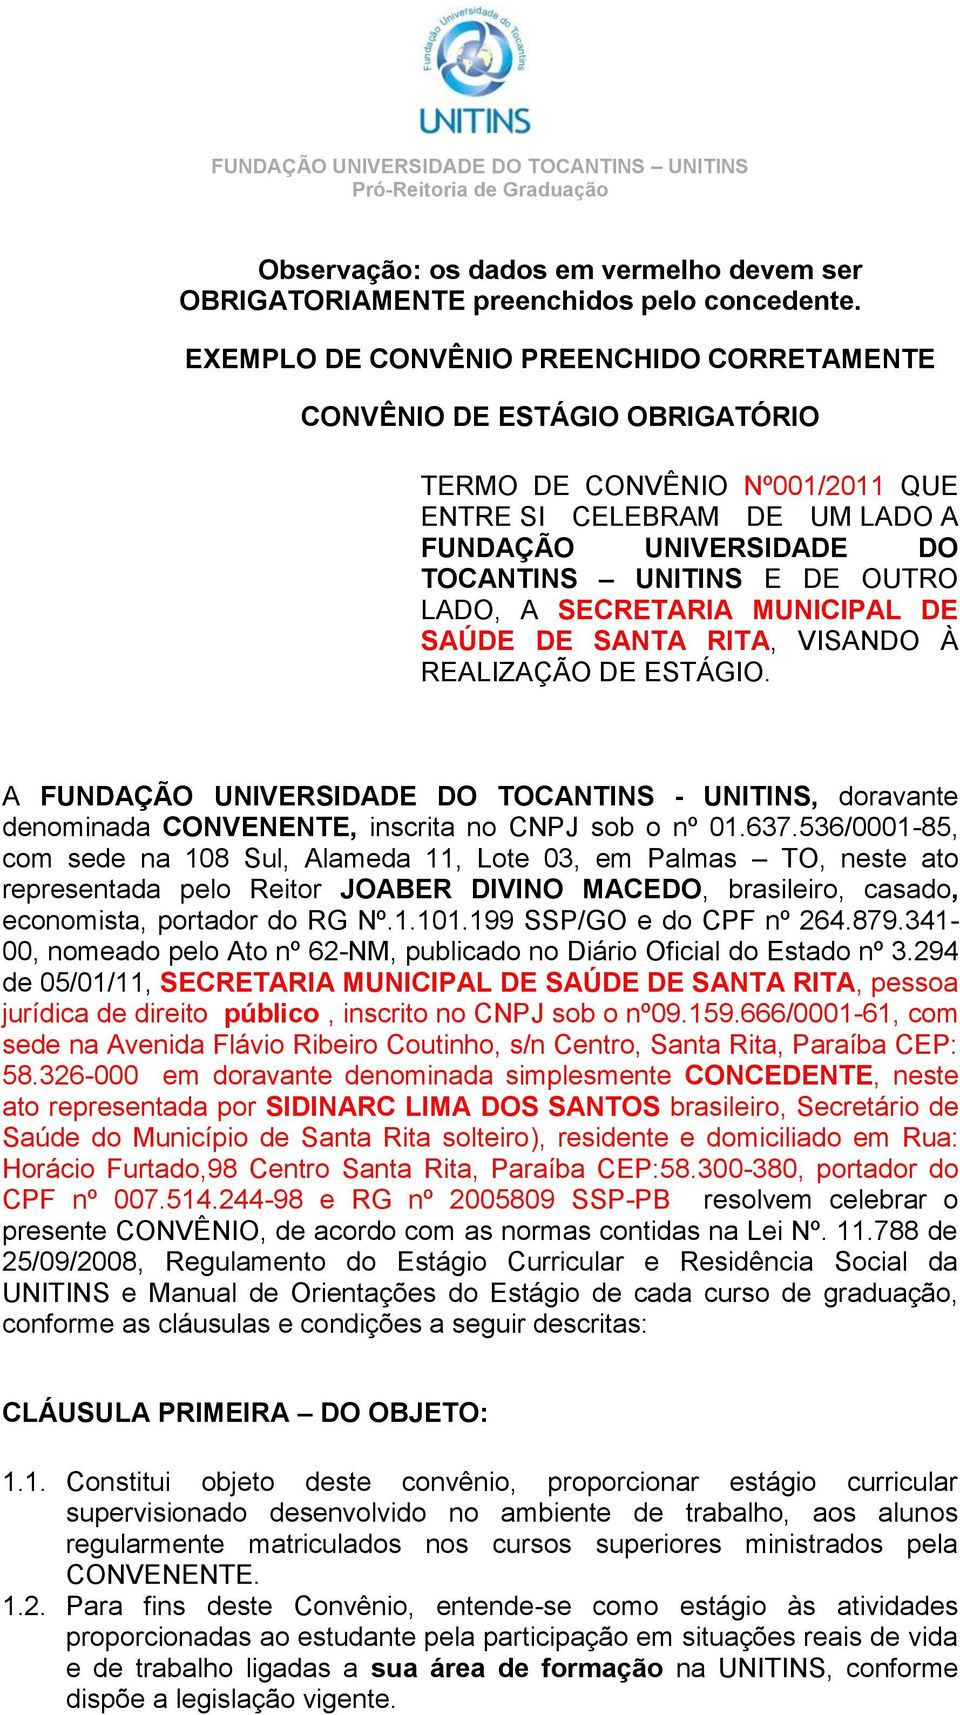 A SECRETARIA MUNICIPAL DE SAÚDE DE SANTA RITA, VISANDO À REALIZAÇÃO DE ESTÁGIO. A FUNDAÇÃO UNIVERSIDADE DO TOCANTINS - UNITINS, doravante denominada CONVENENTE, inscrita no CNPJ sob o nº 01.637.